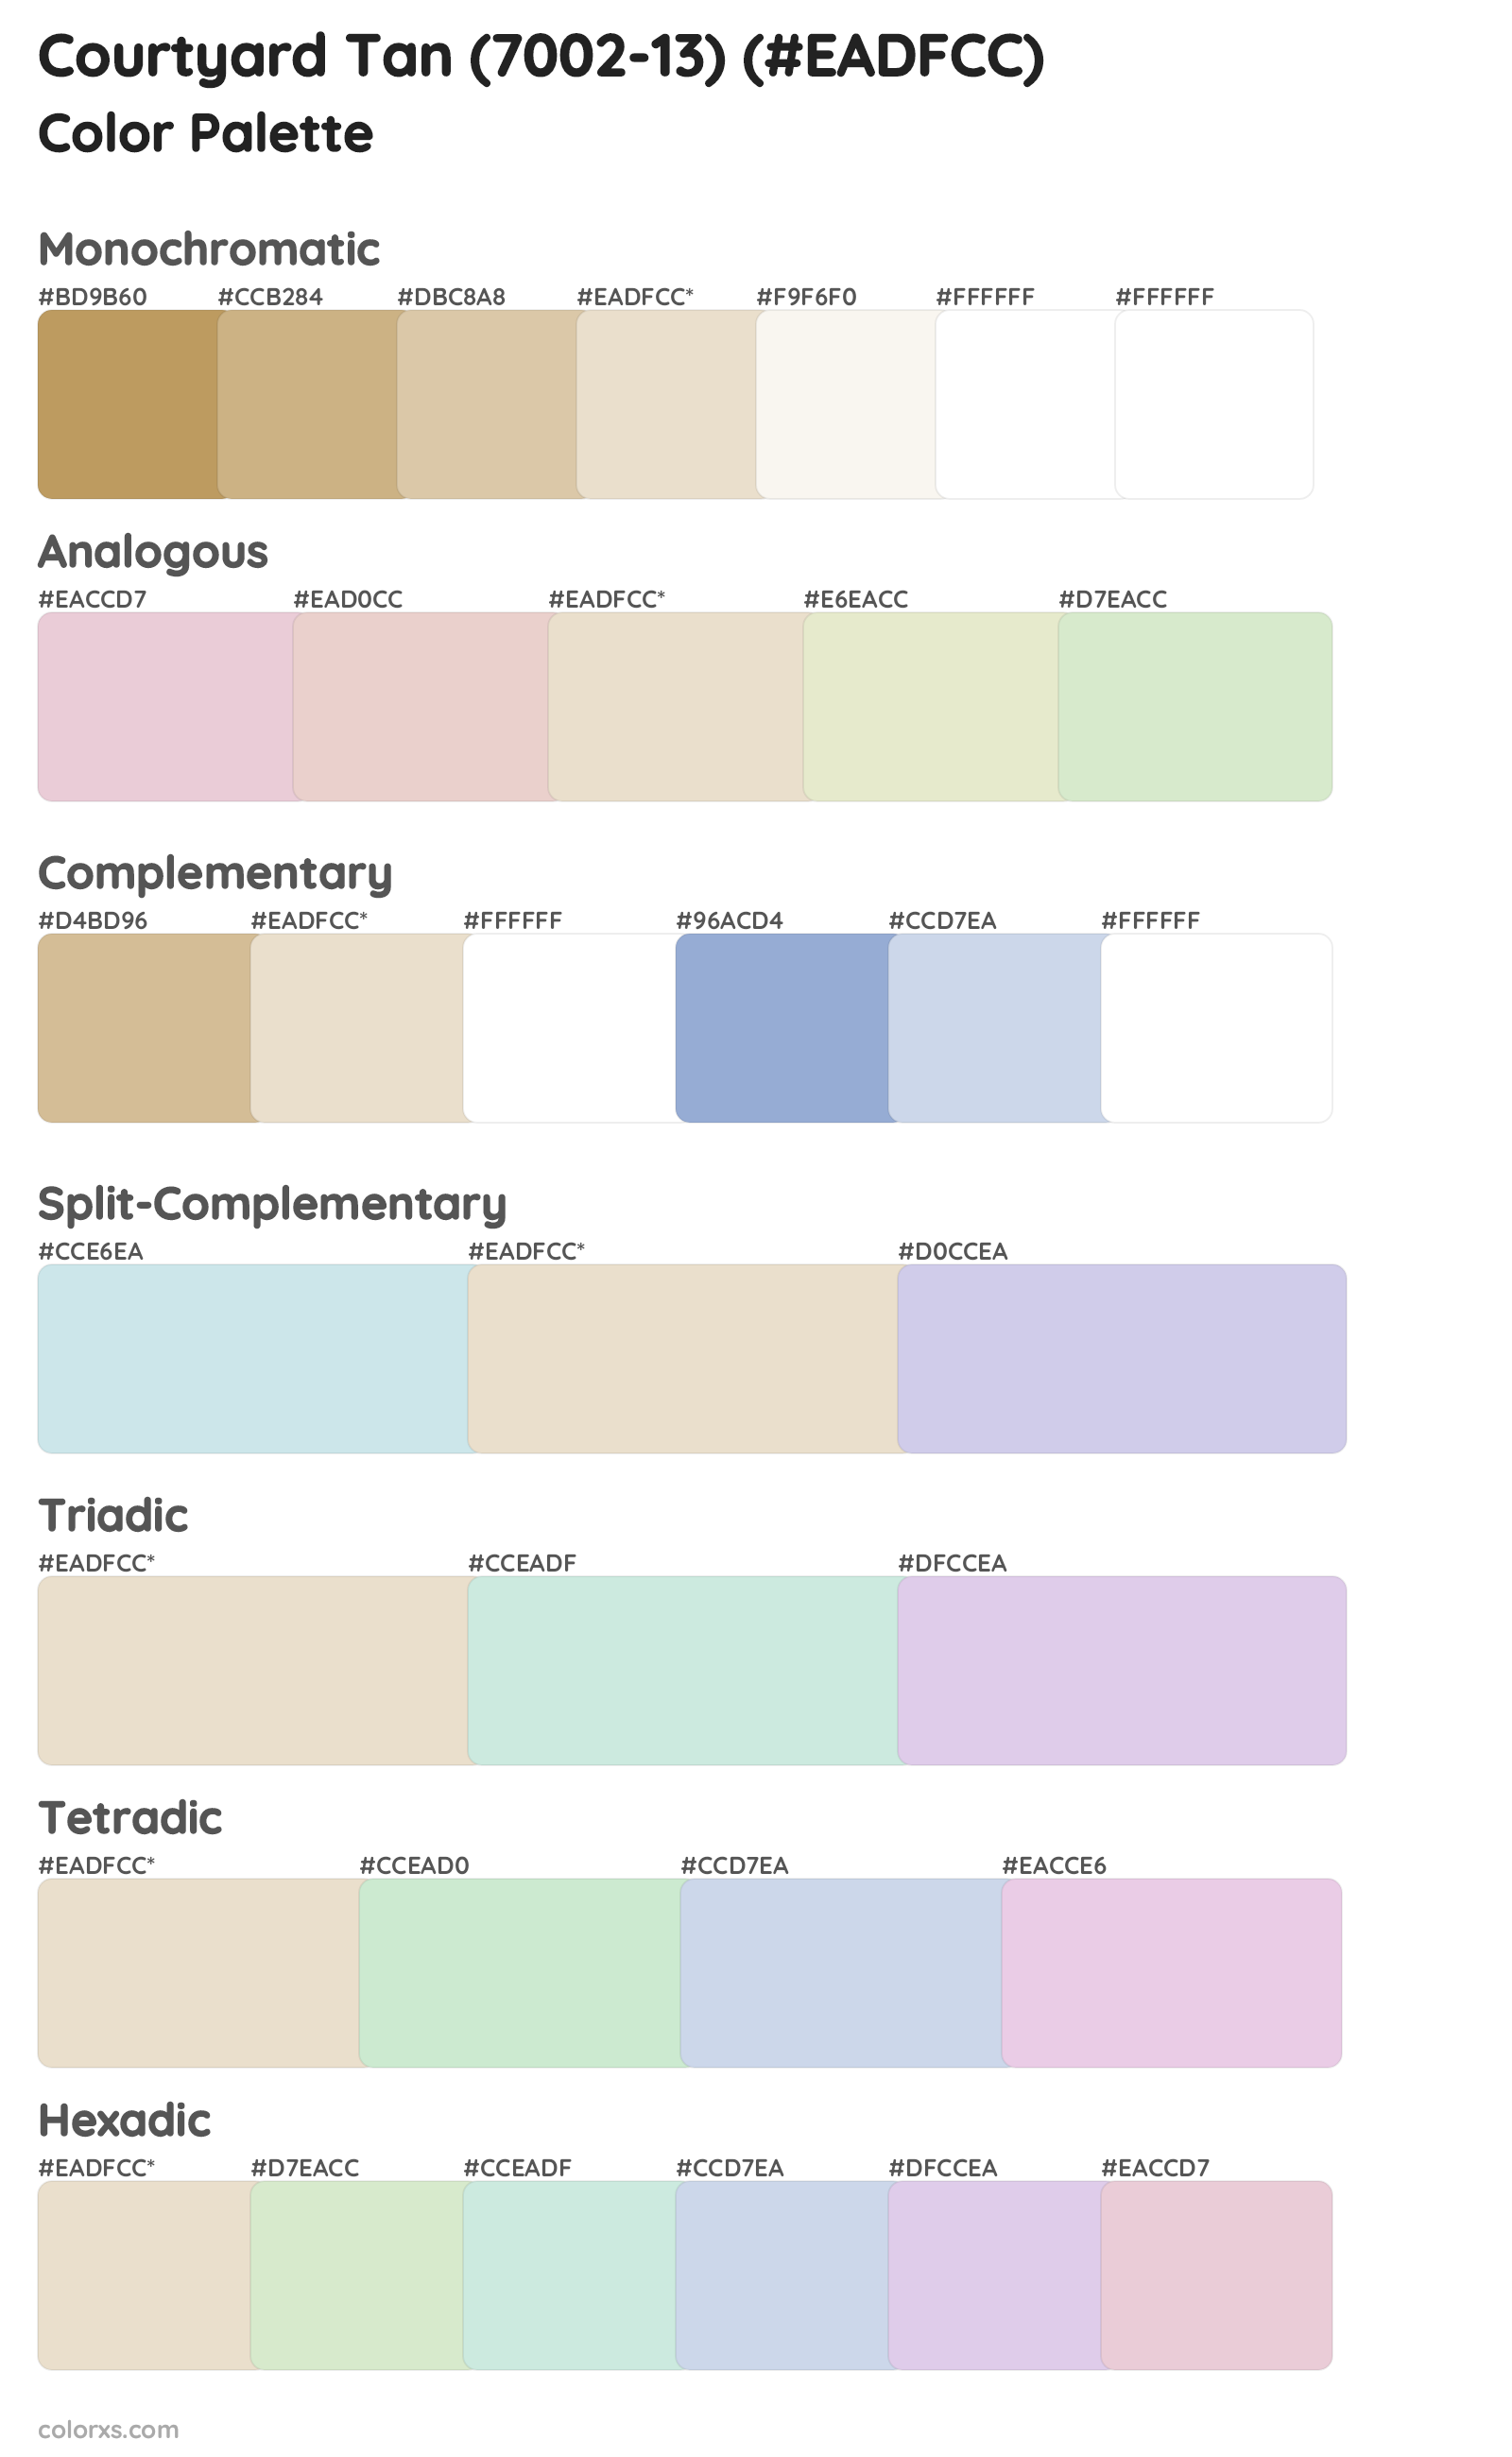 Courtyard Tan (7002-13) Color Scheme Palettes